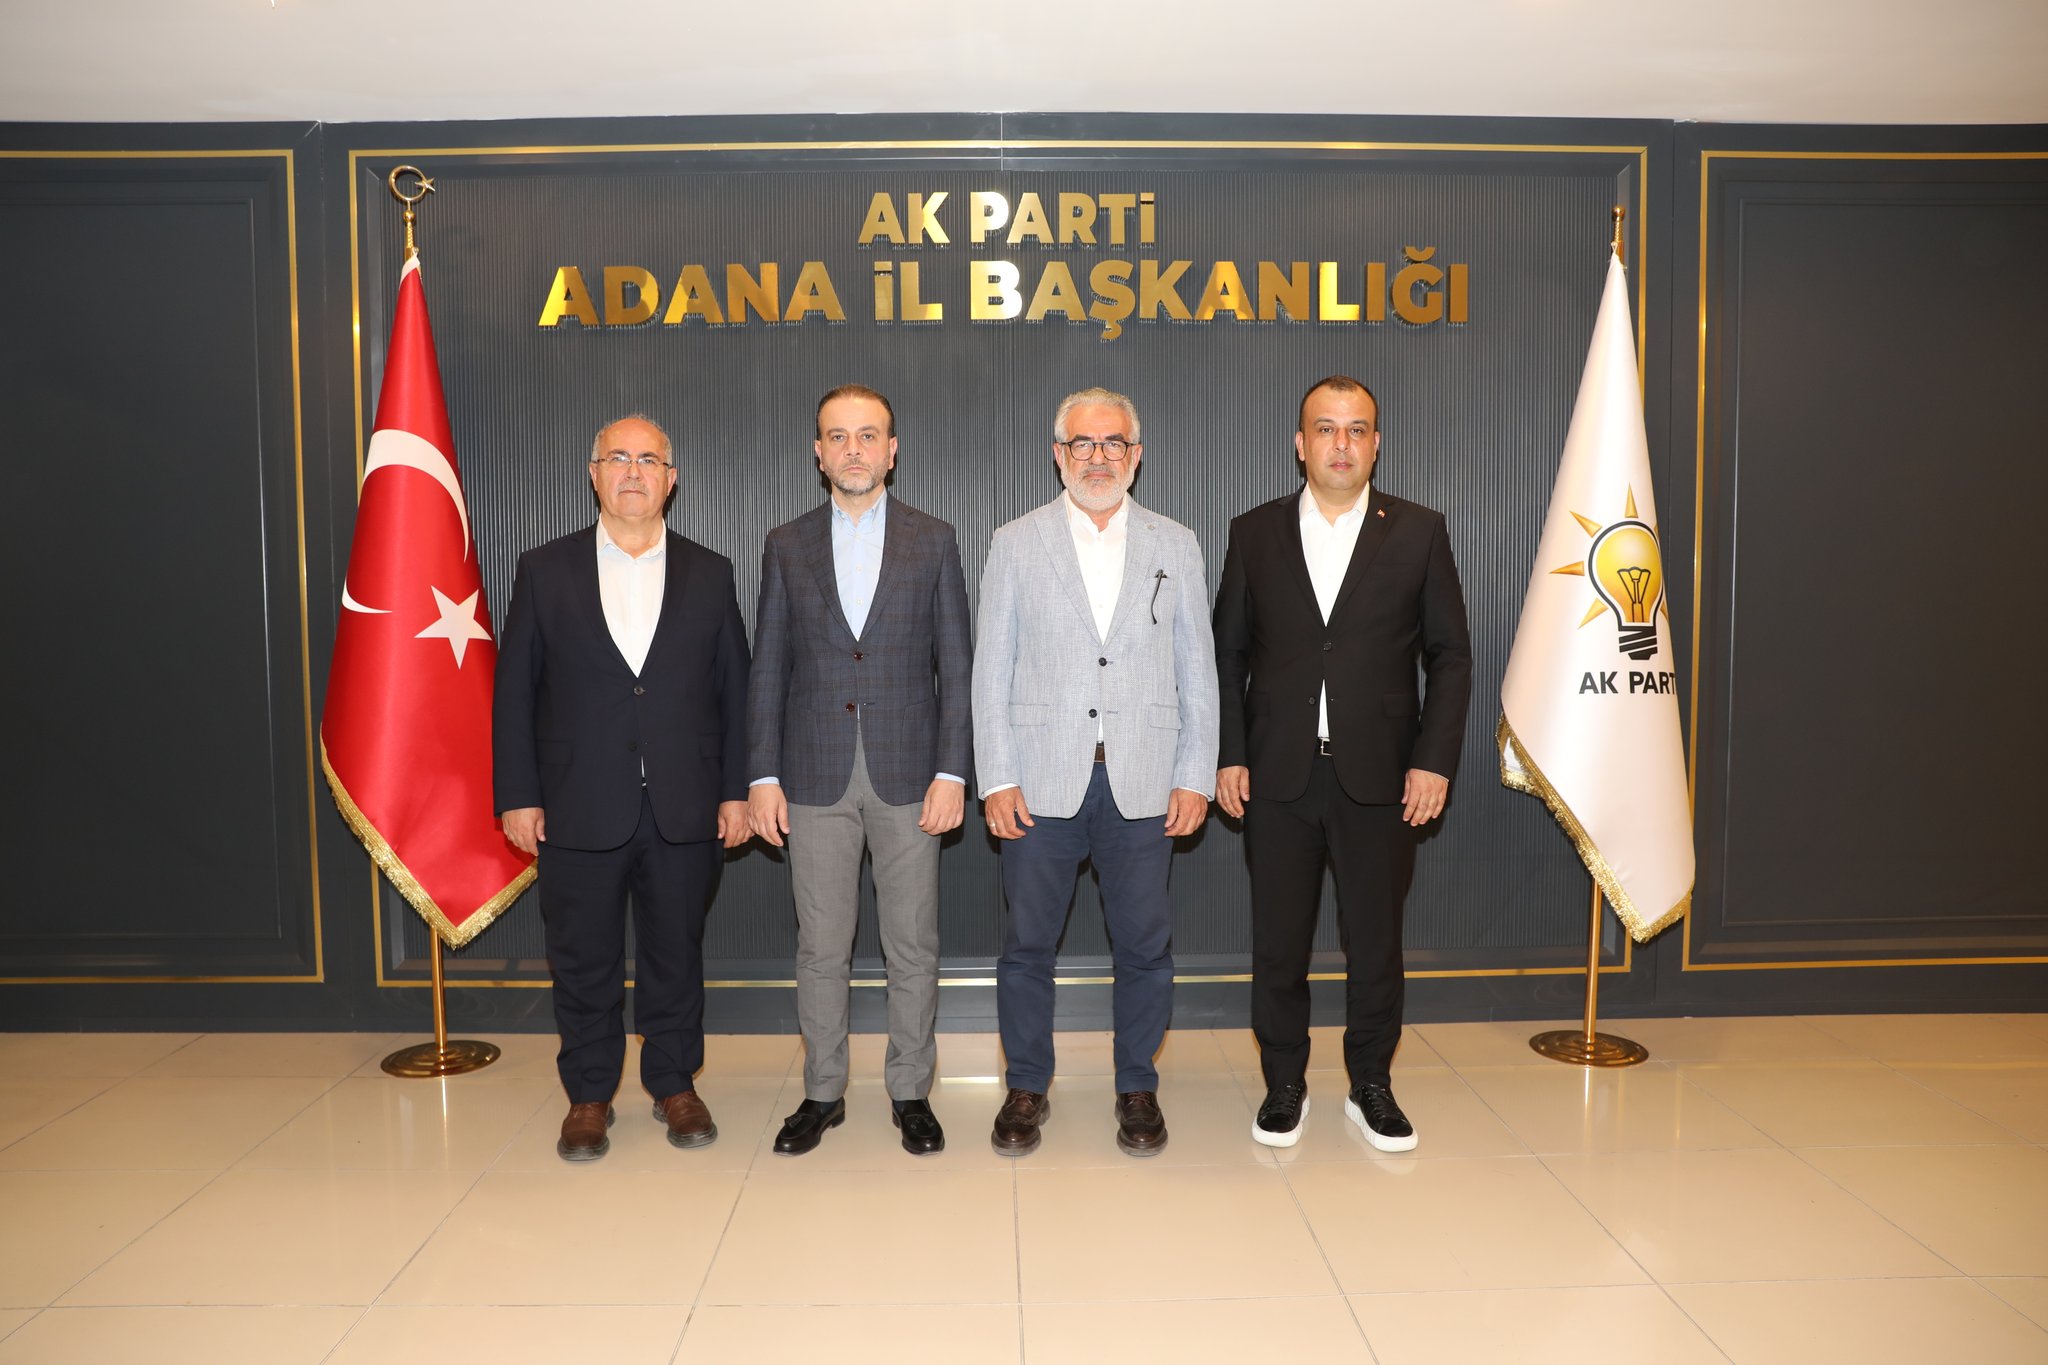 Gülaçtı Adana büyükşehir meclisinde AK Parti'yi temsil edecek başkanvekili ve sözcüyü açıkladı